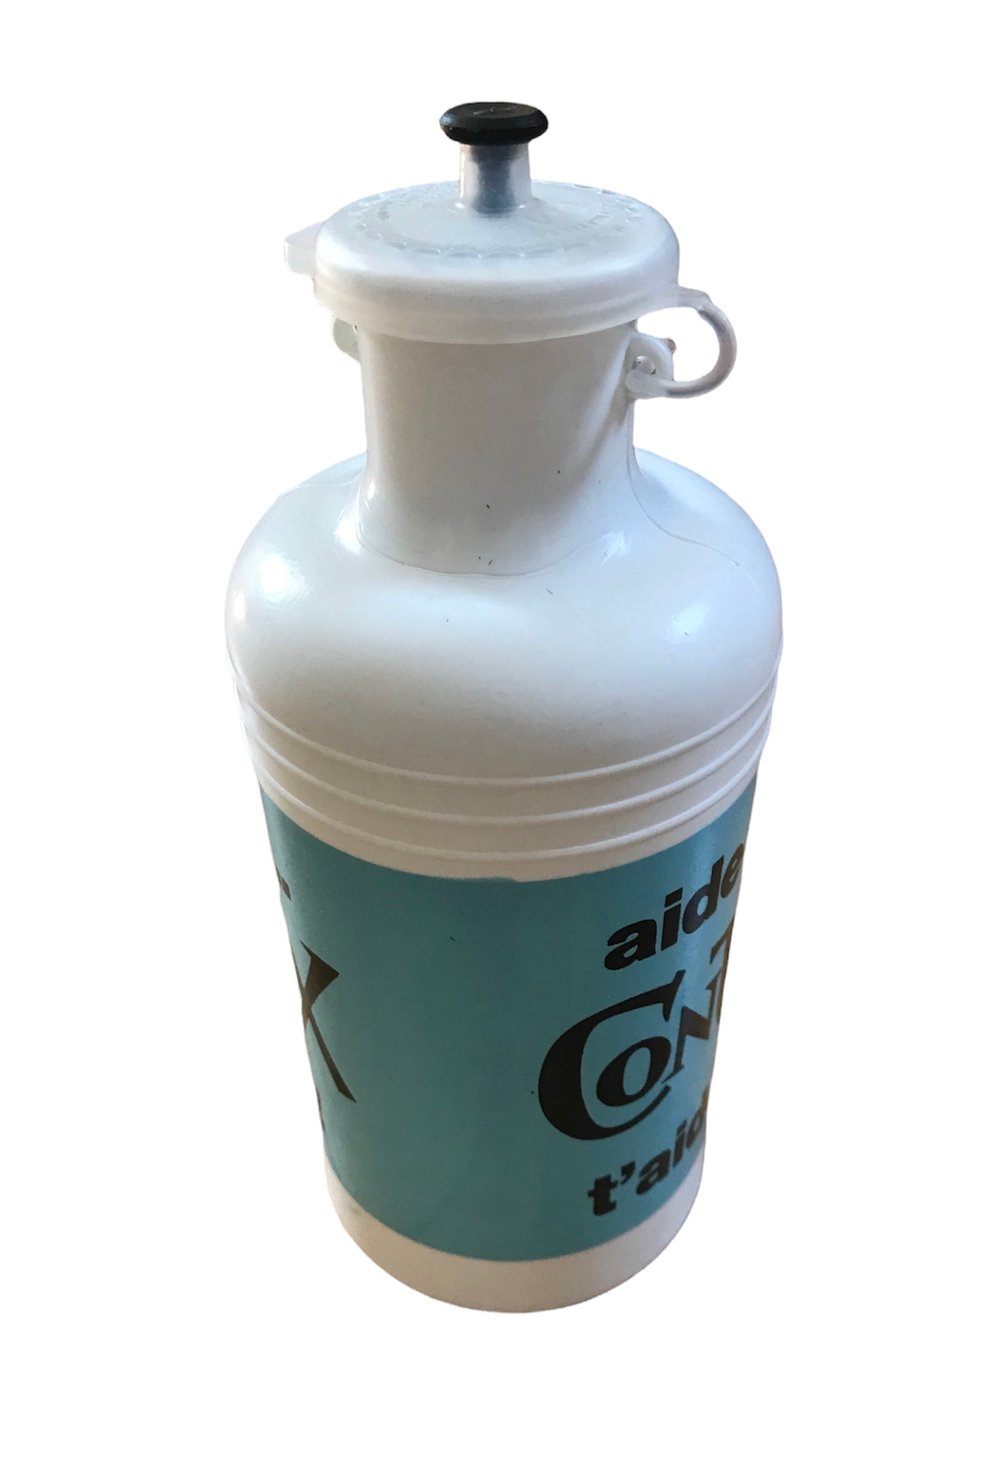 1975 - Tour de France / Contrex water bottle